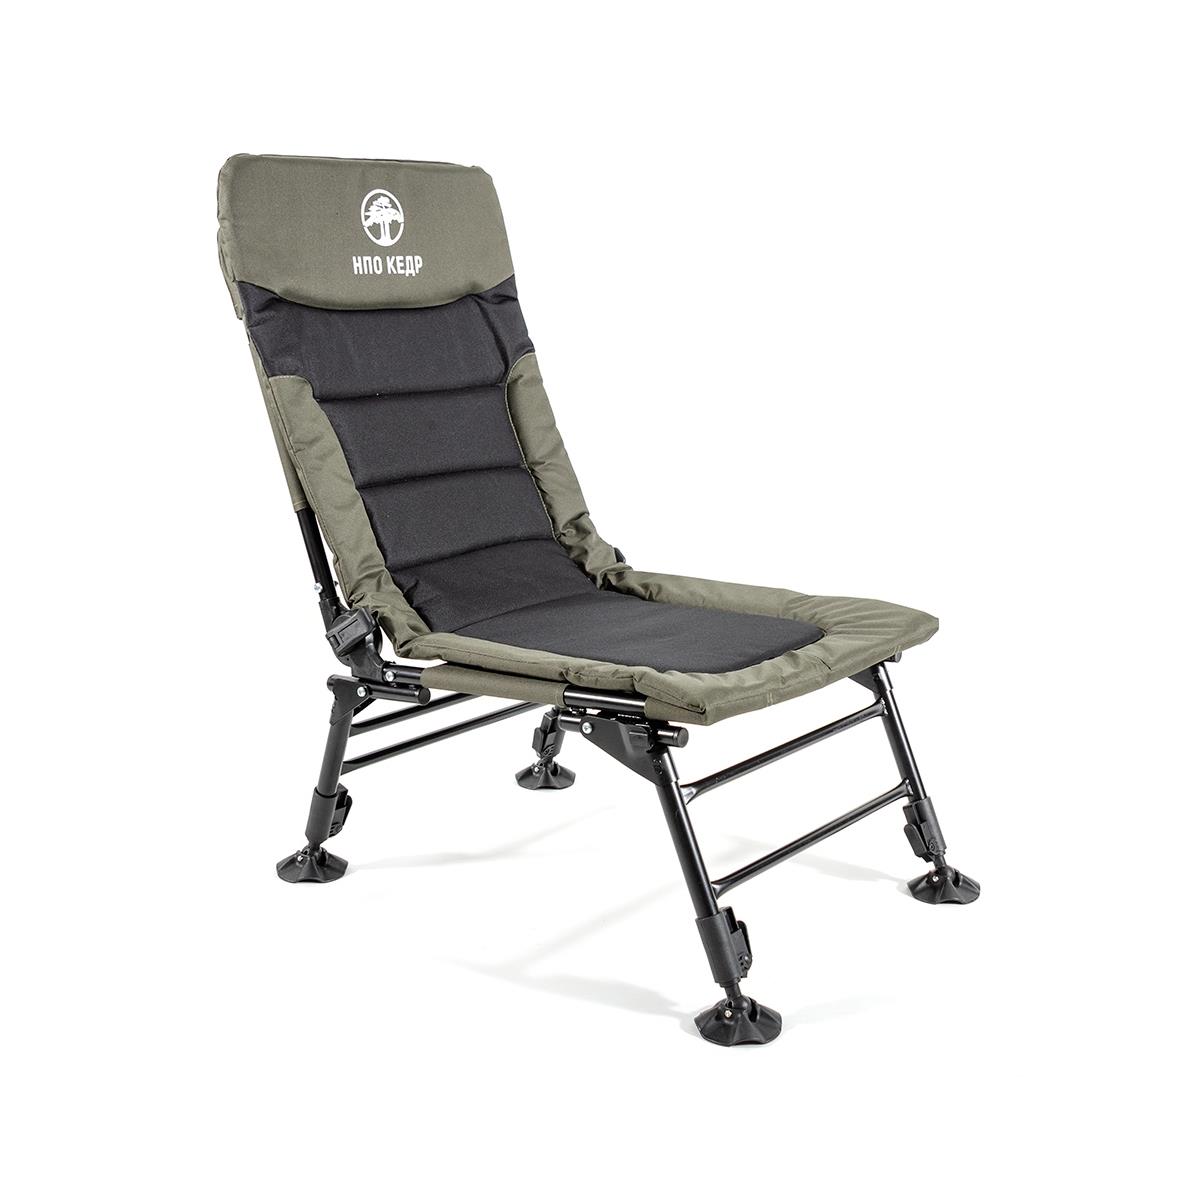 Кресло карповое без подлокотников (SKC-02)  Кедр рулетка кедр